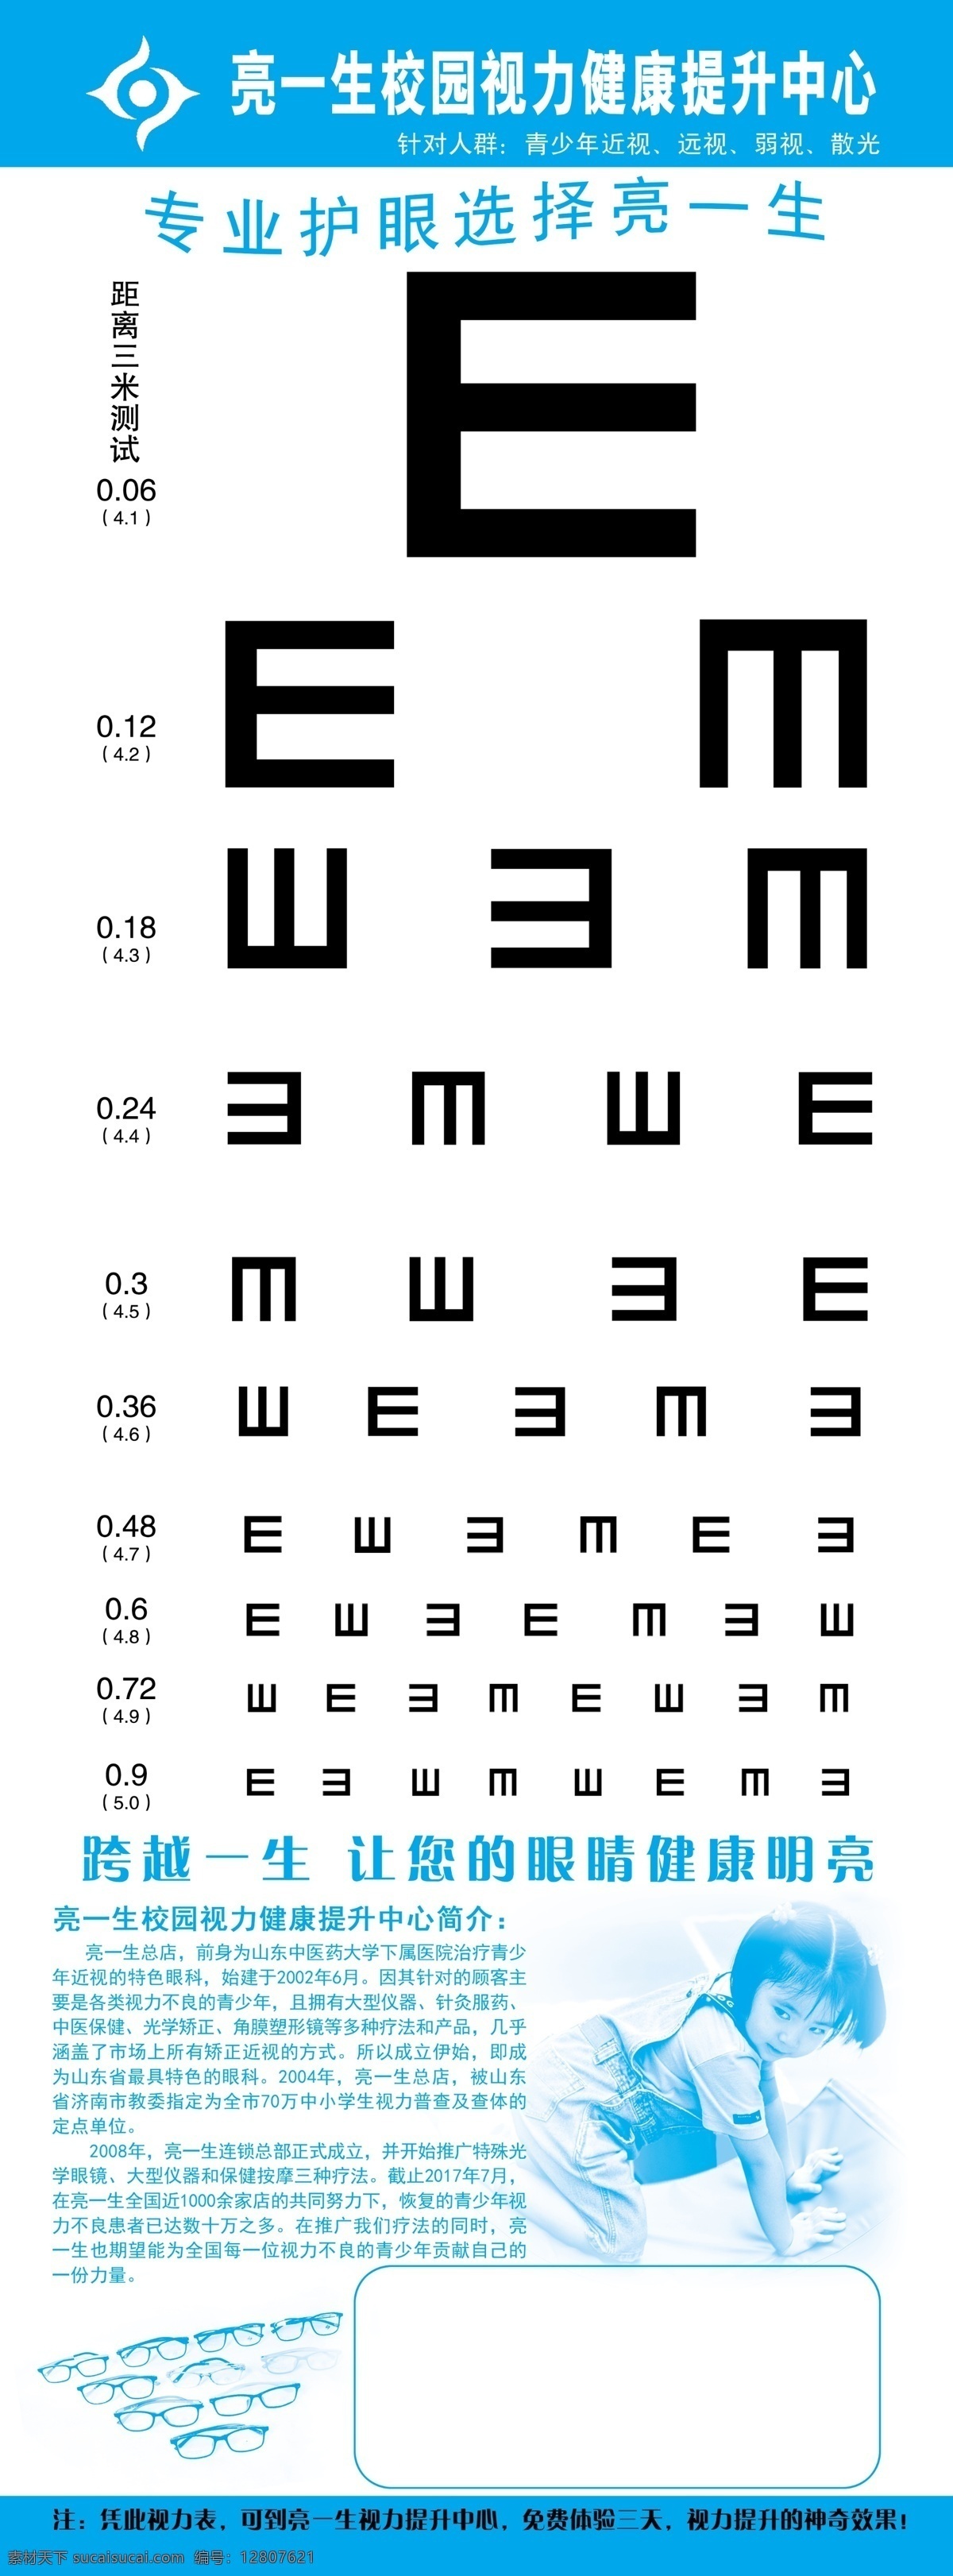 视力表海报 眼镜 视力表 字母 海报 宣传单 dm单 眼睛 保健 爱护 dm宣传单